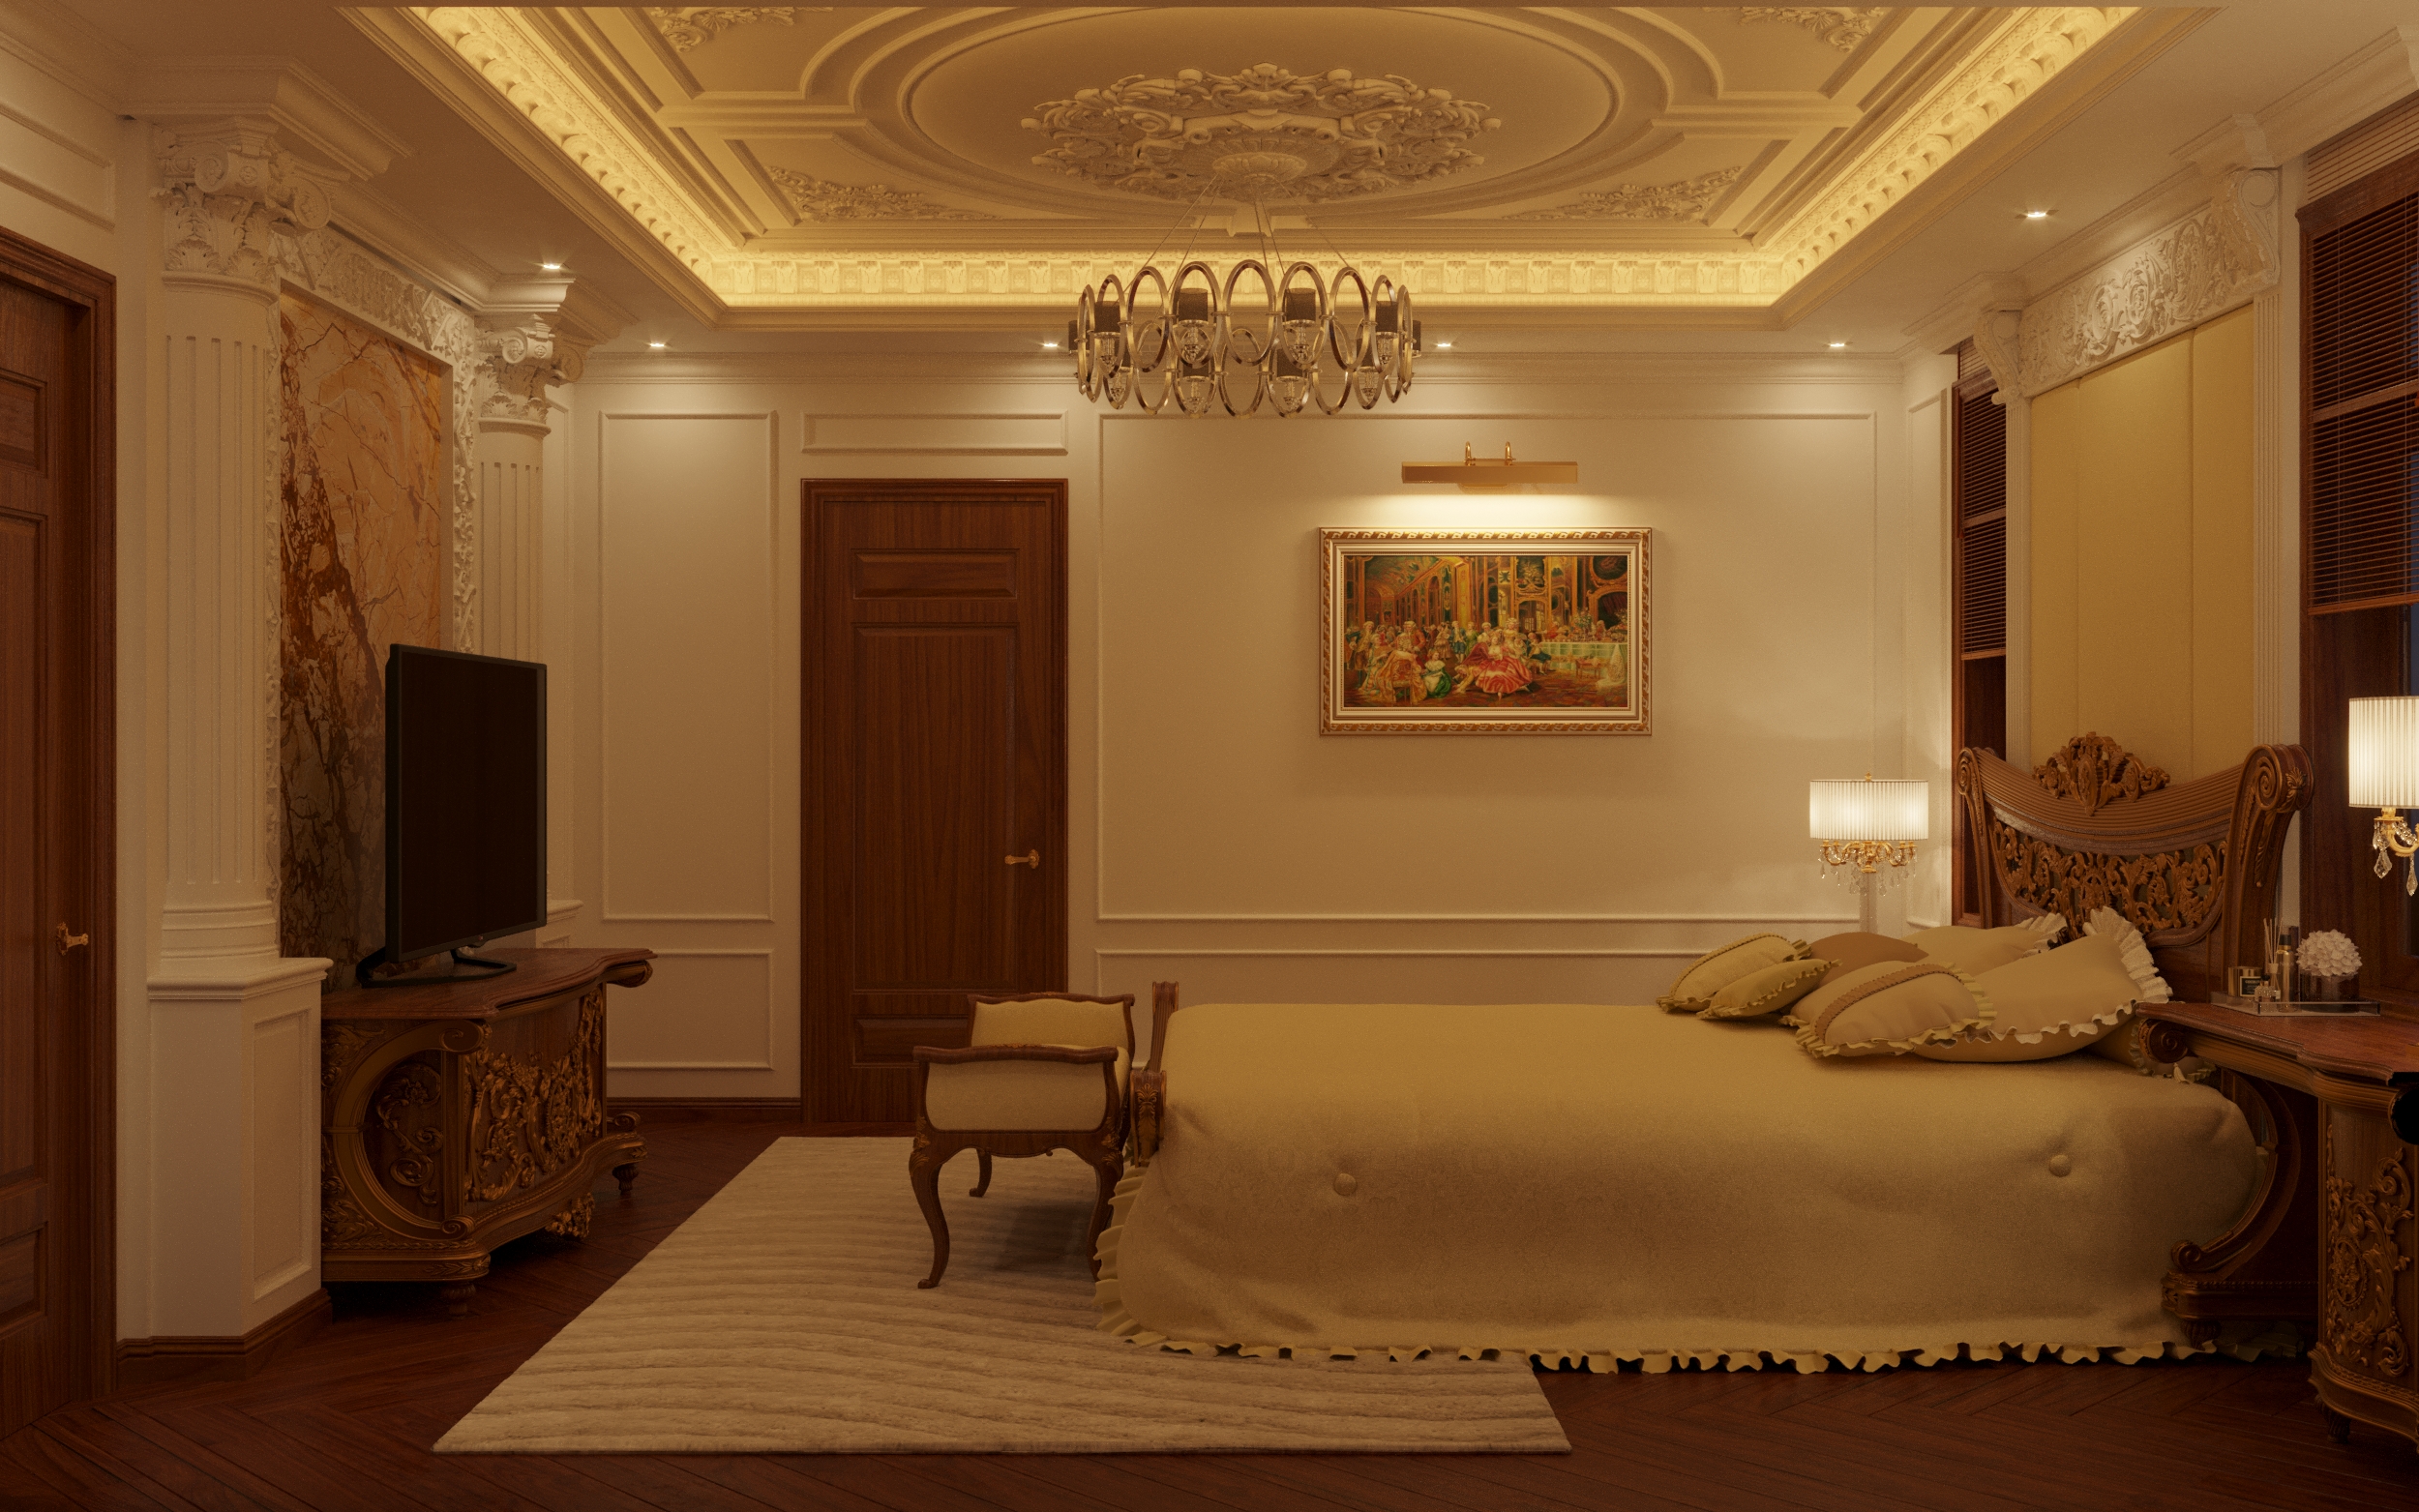 Thiết kế nội thất Biệt Thự tại Hà Nội Nội Thất tân cổ nhà Bác Hoàng 1628506980 6